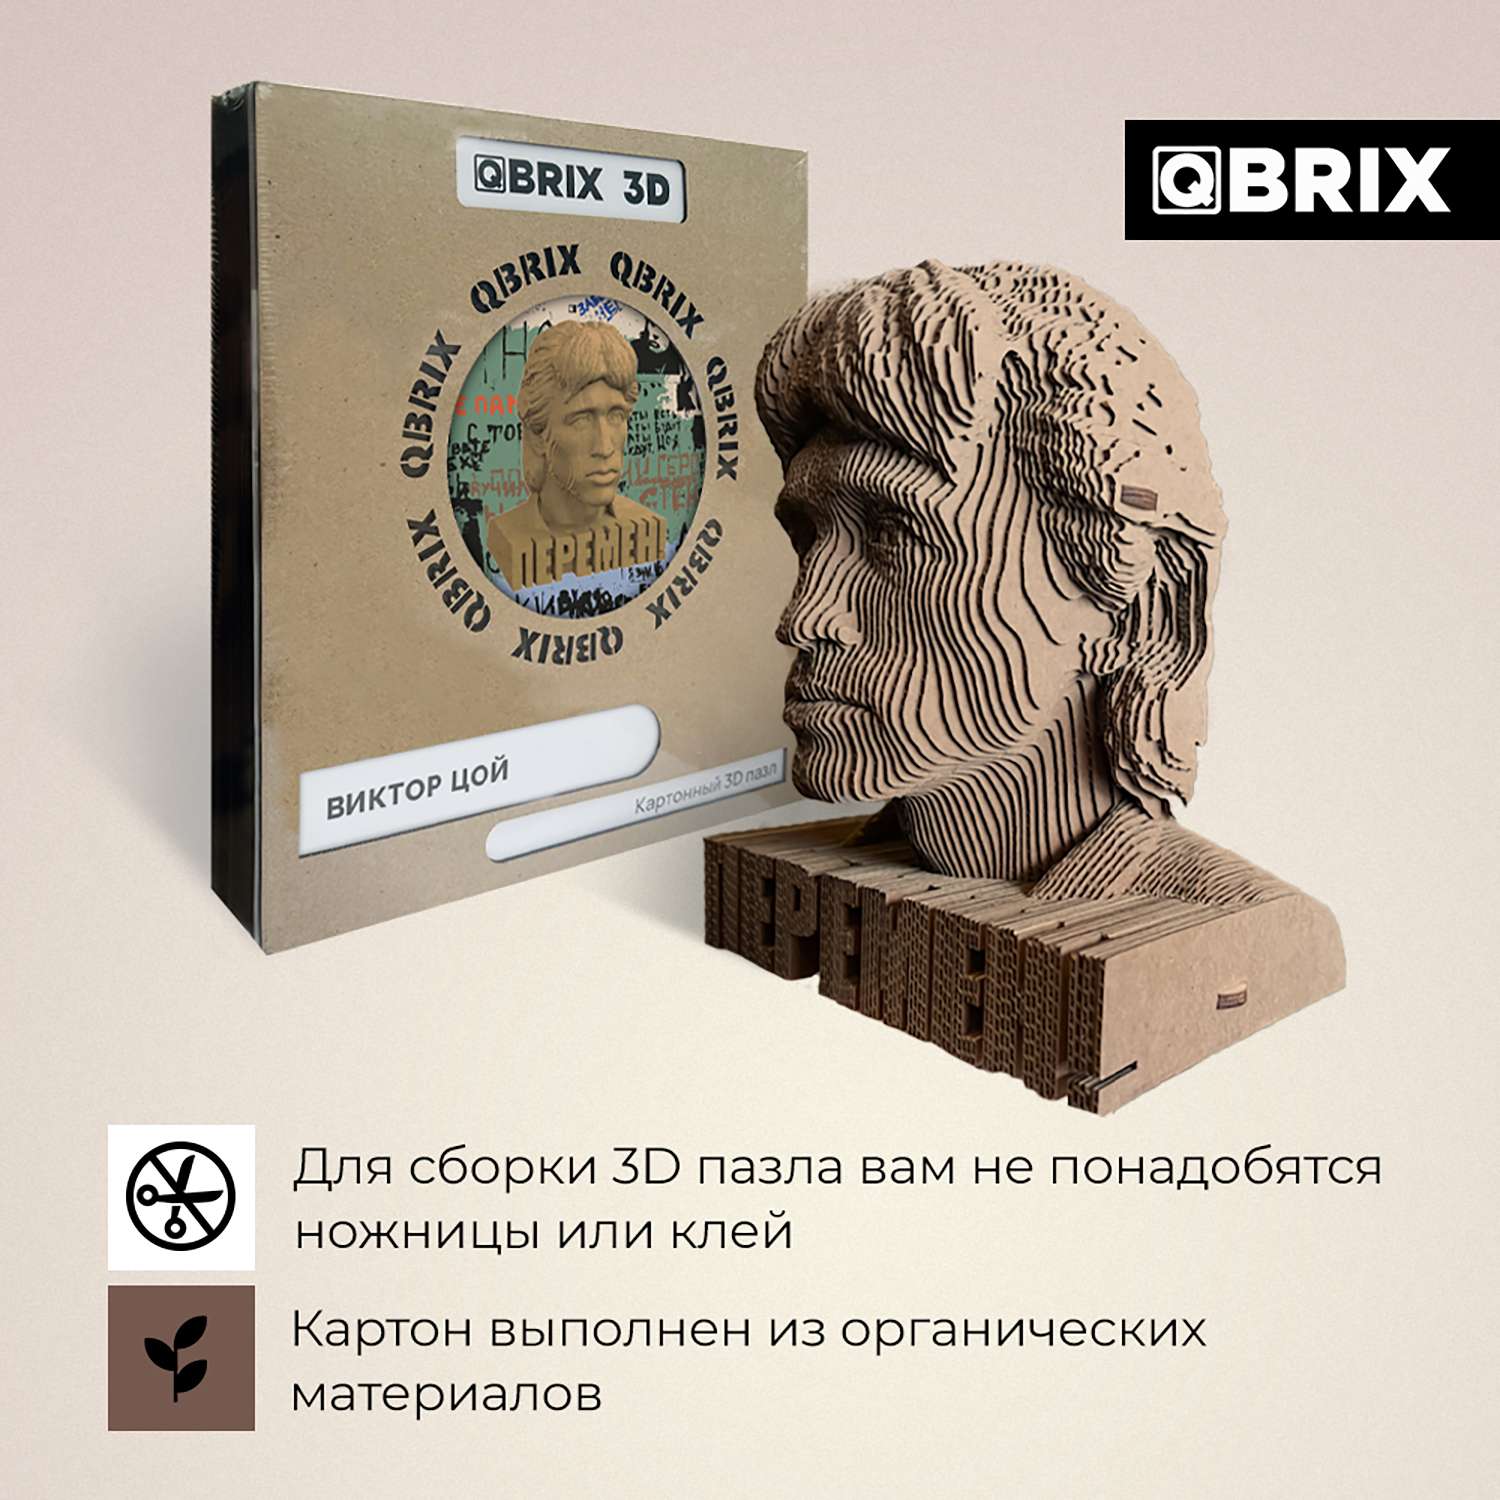 Конструктор QBRIX 3D картонный Виктор Цой 20016 20016 - фото 3